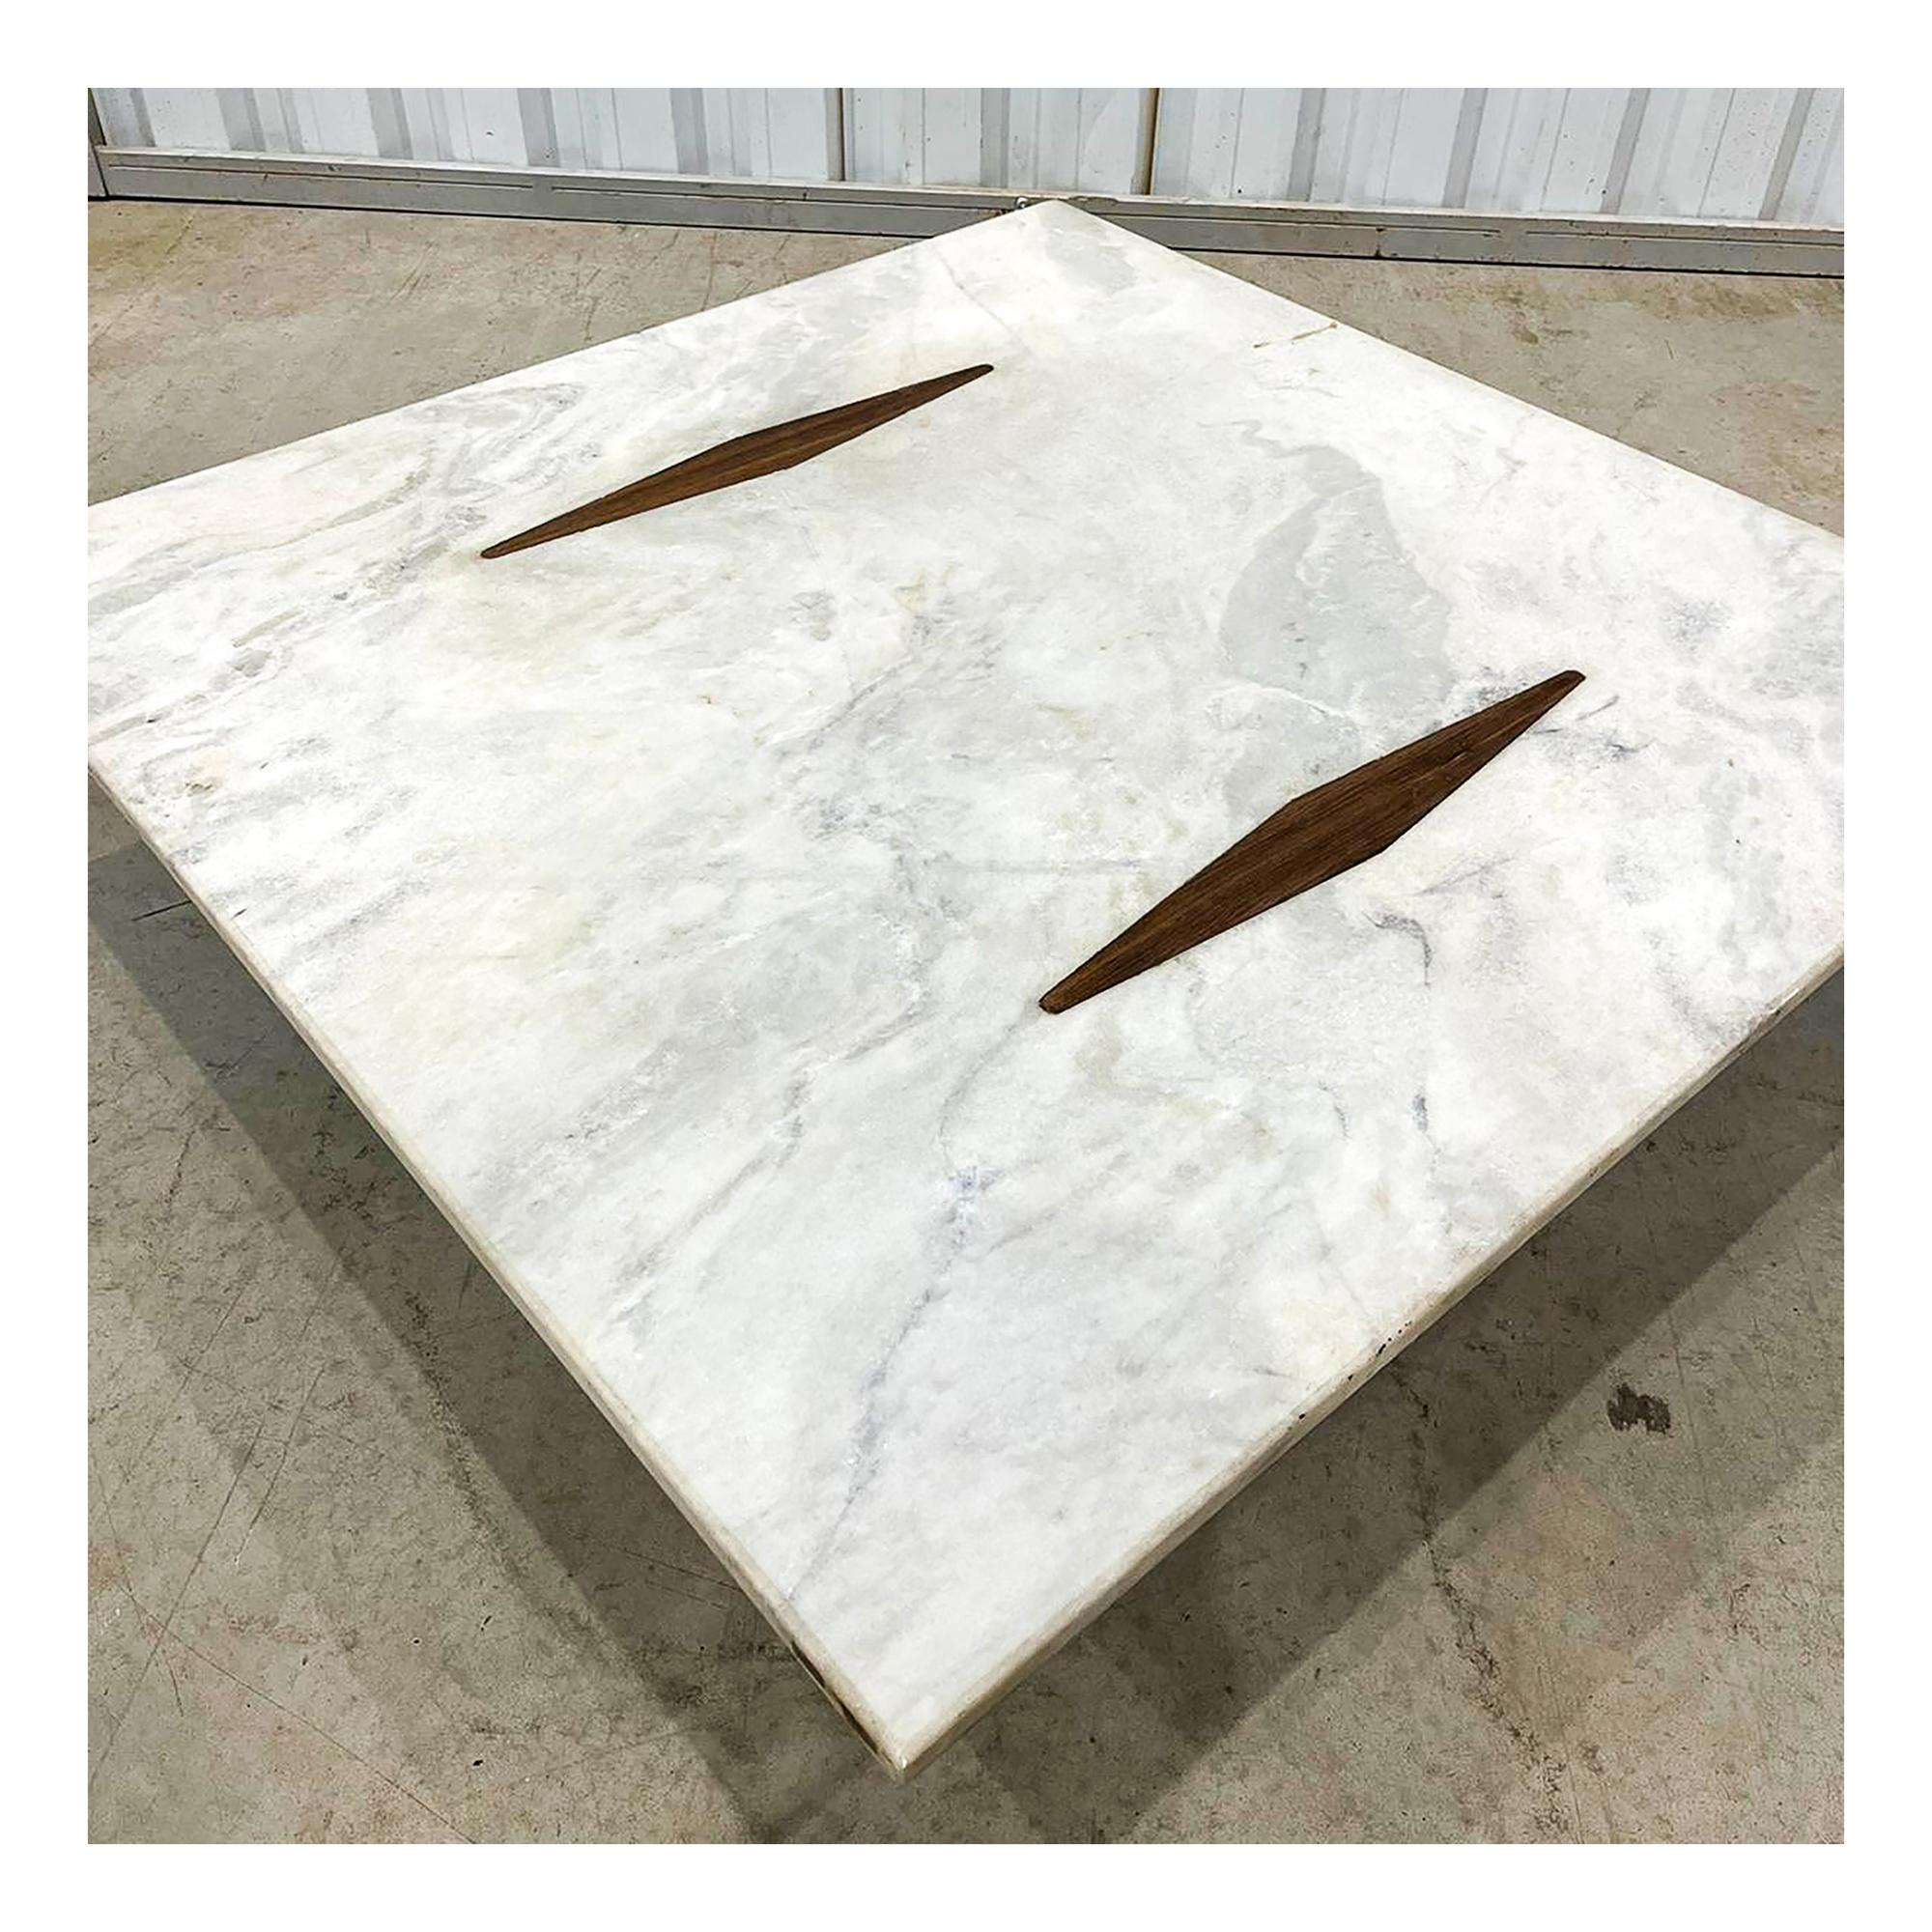 Disponible dès maintenant, cette table basse moderne du milieu du siècle réalisée en bois et en marbre par Jorge Zalszupin au Brésil en 1959 est un chef-d'œuvre !

La table basse 